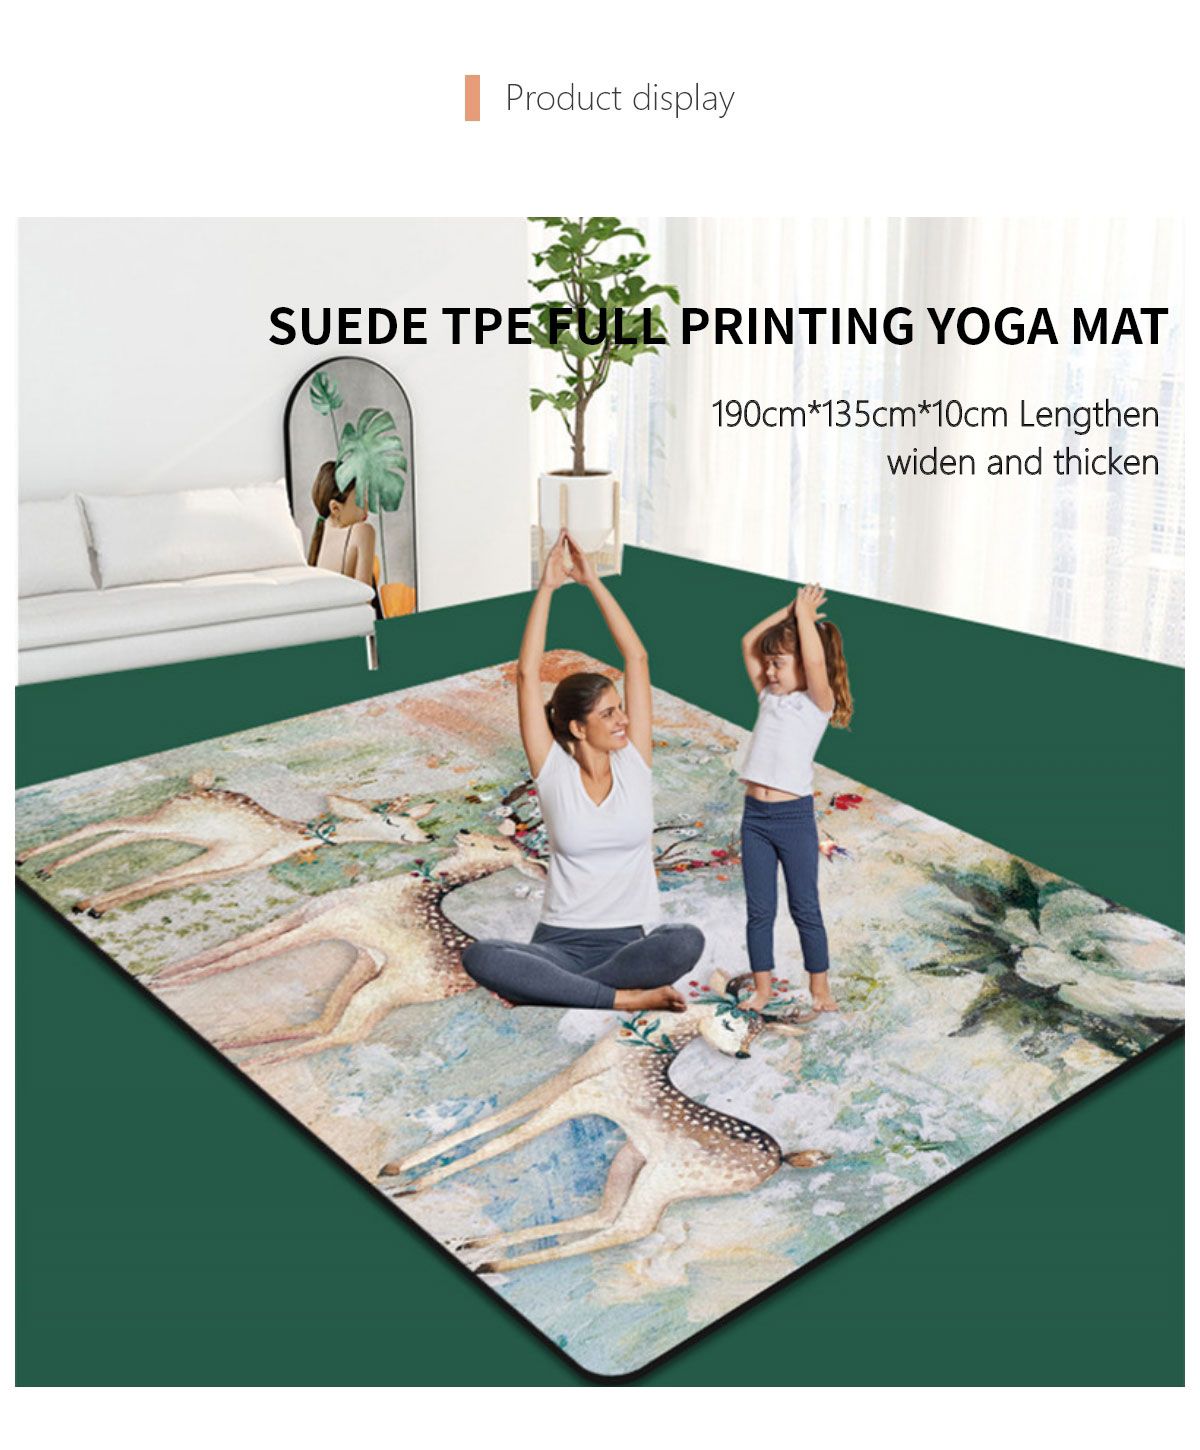 Suede Tpe Full Printing Yoga Mat